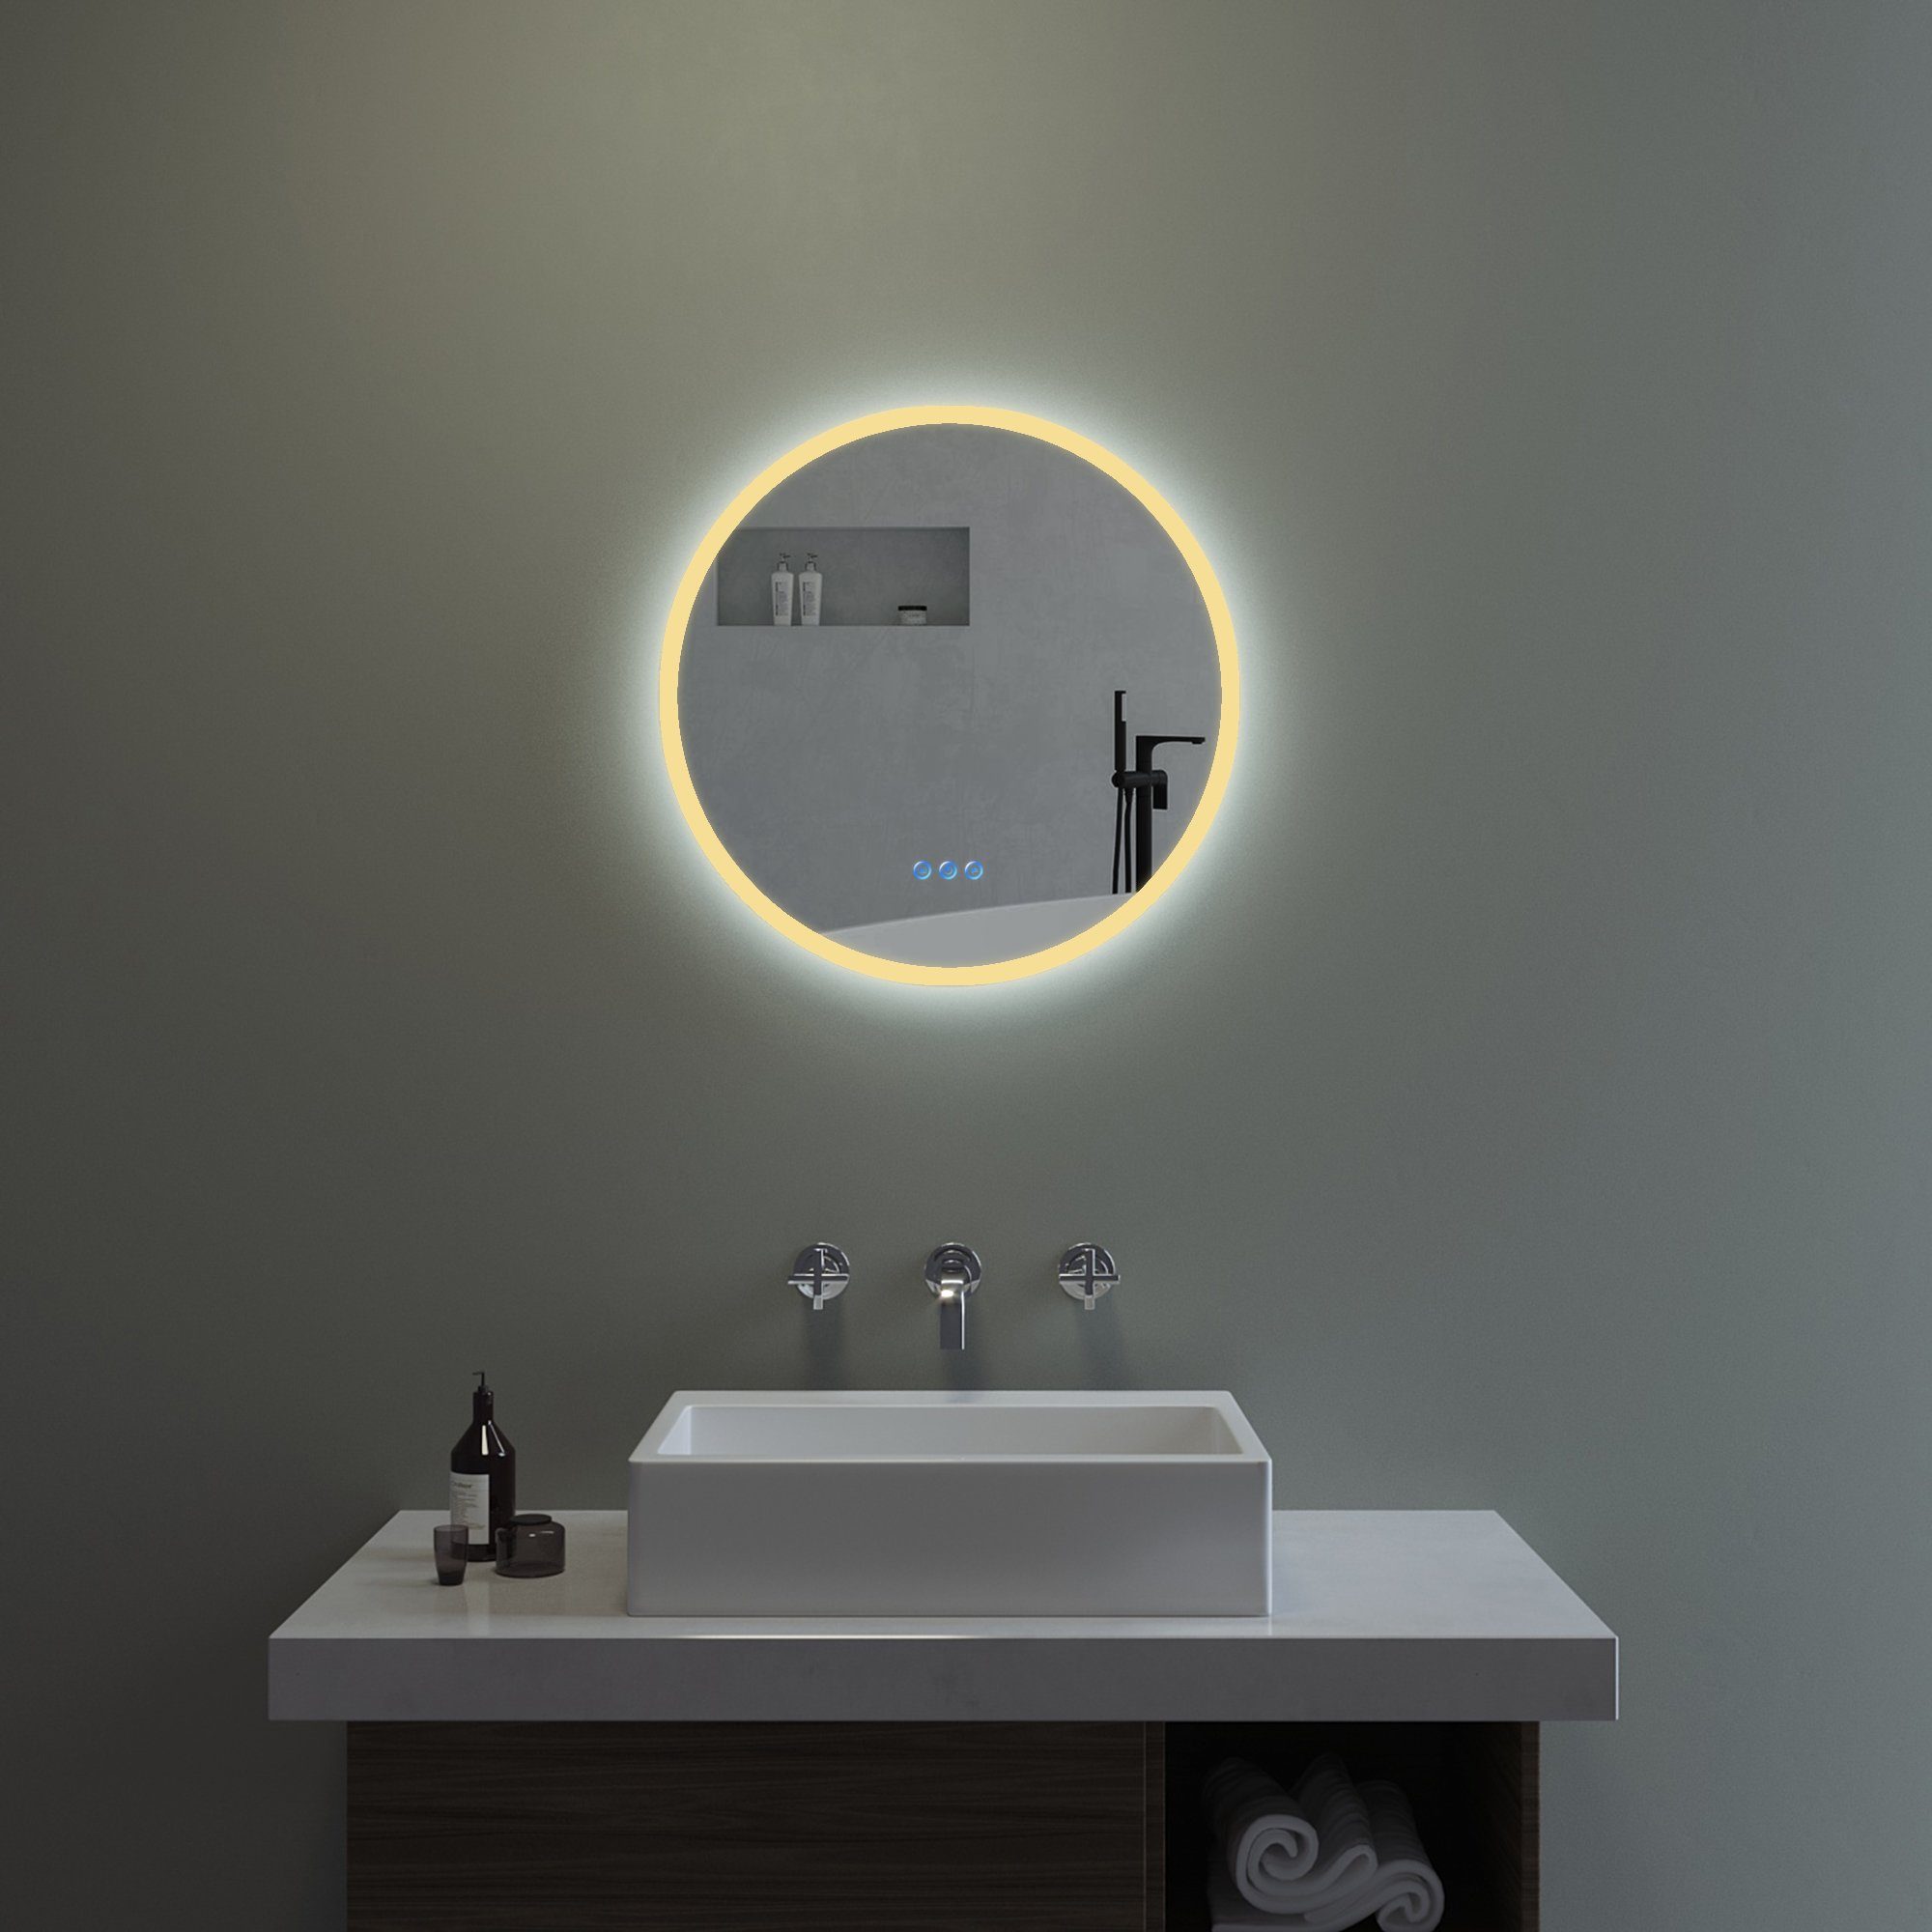 Metro Lane Badspiegel LED Leuchte Lichtspiegel Spiegel Wandspiegel mehrere  Auswahl & Bewertungen